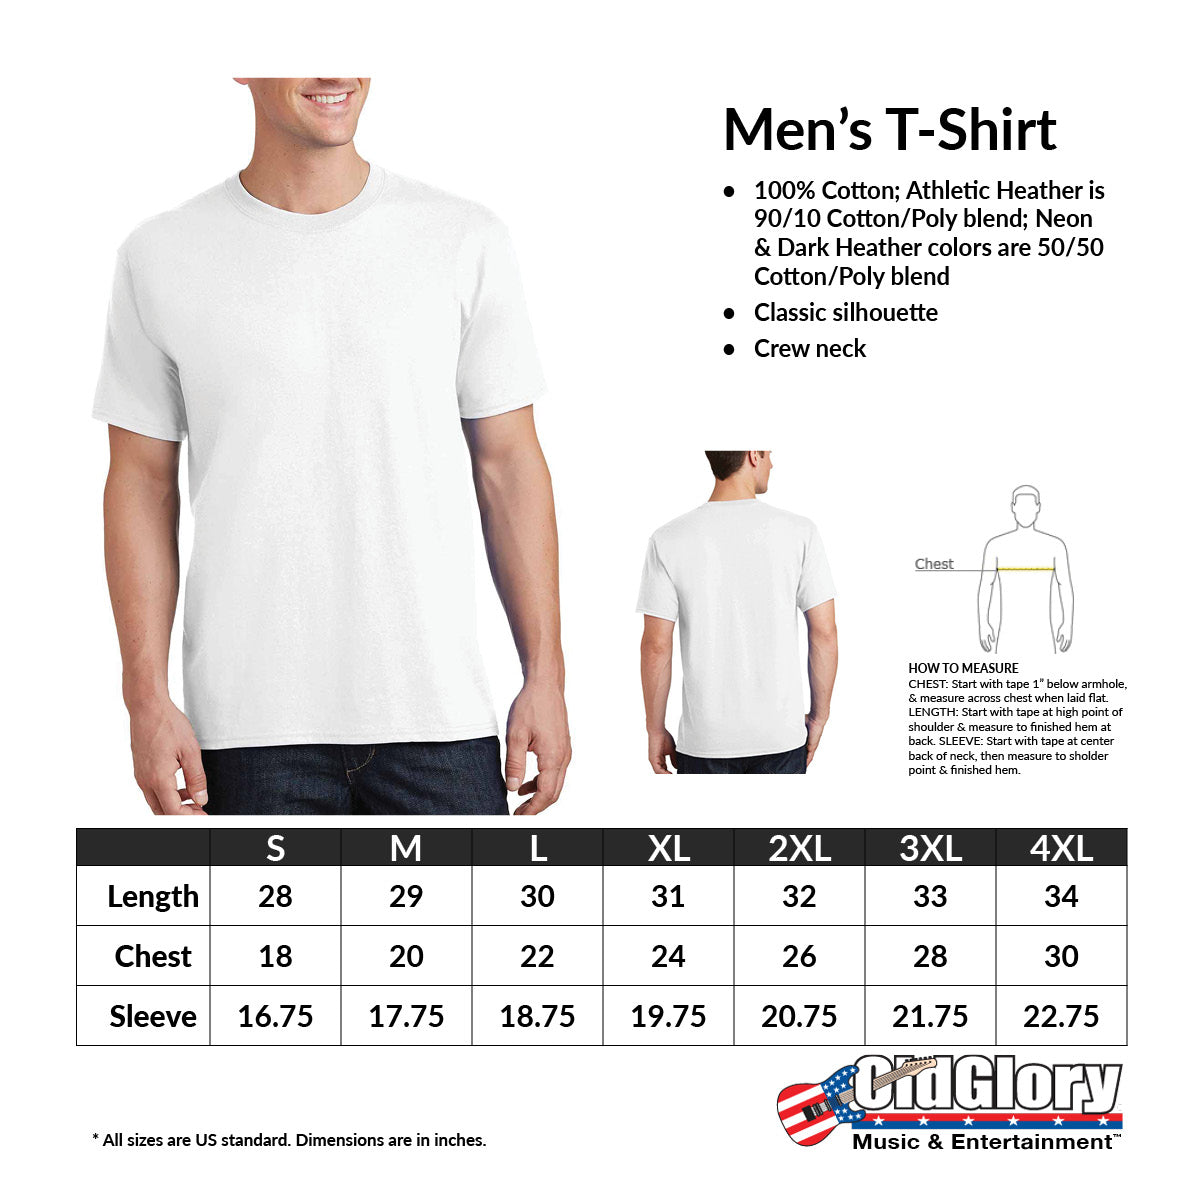 Mlb Philadelphia Phillies Women's Short Sleeve V-neck Core T-shirt : Target